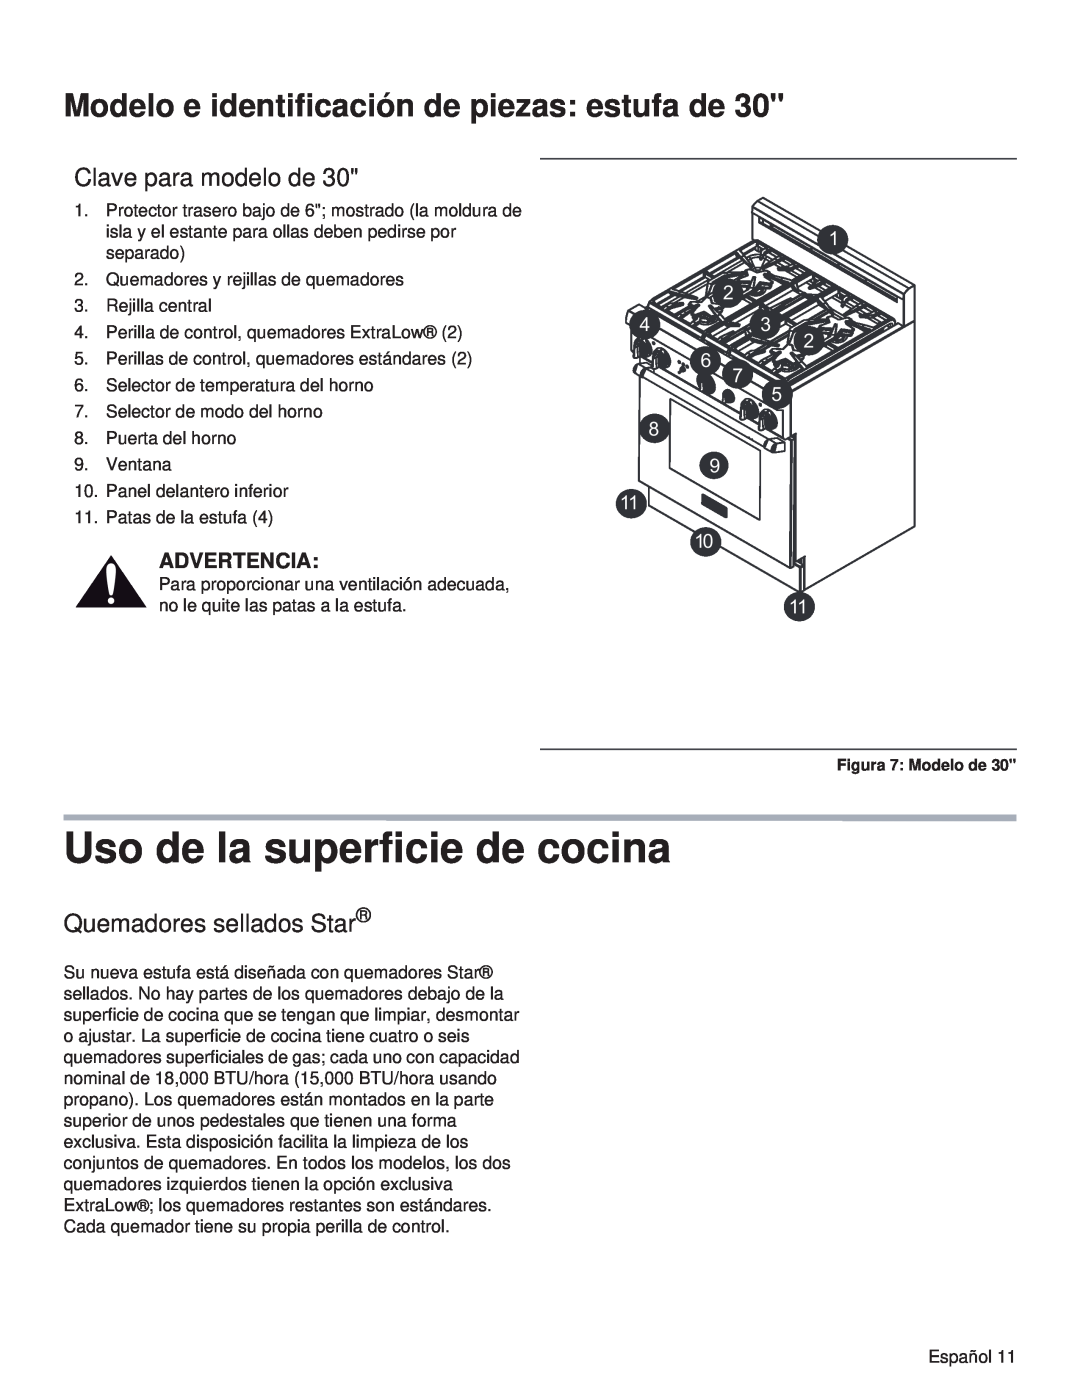 Thermador PRG48, PRL36, PRG30 Uso de la superficie de cocina, Clave para modelo de, Quemadores sellados Star, Advertencia 